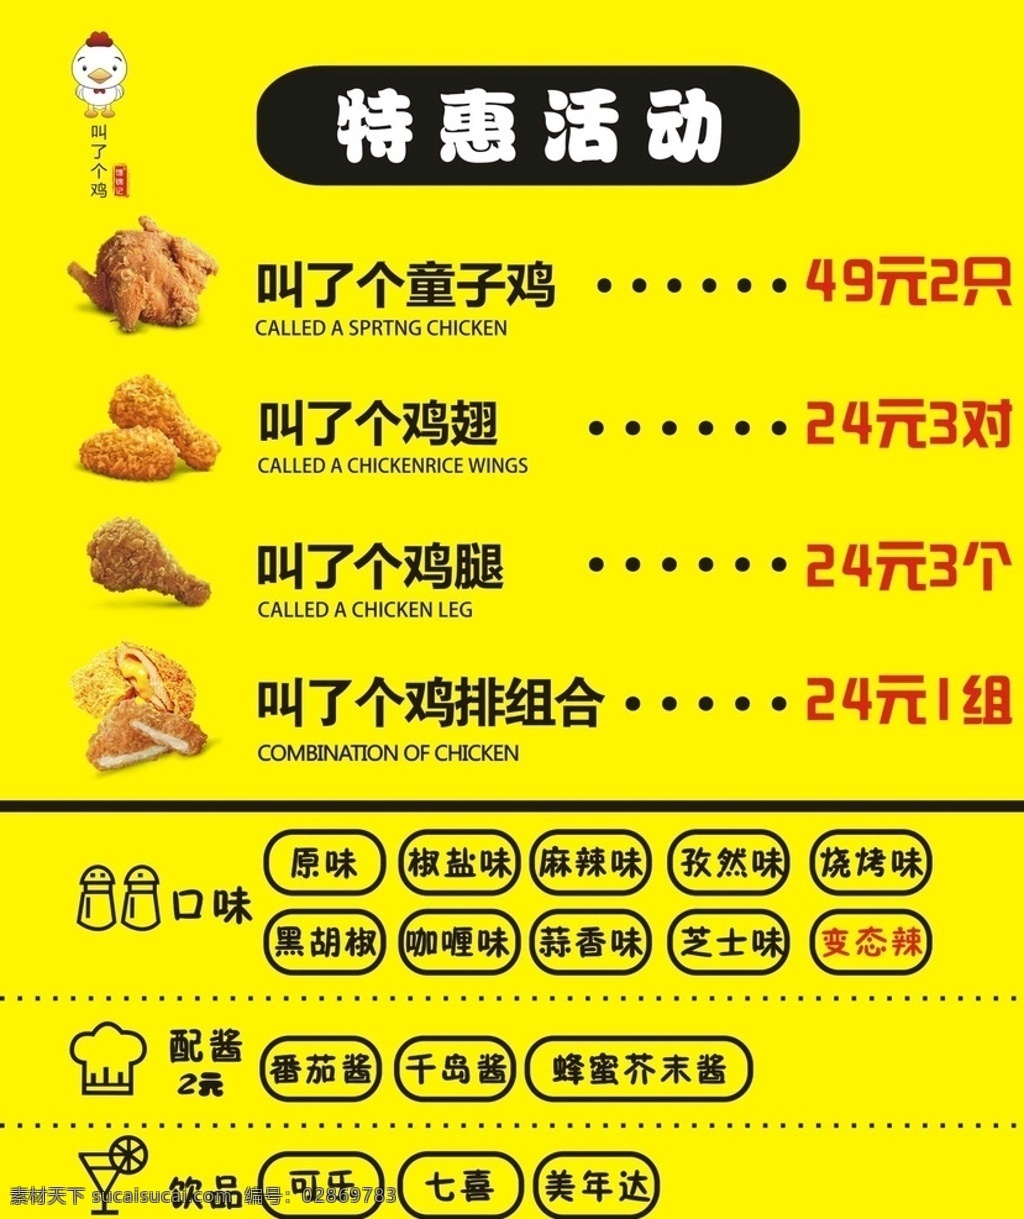 炸鸡活动 炸鸡菜单 炸鸡价格 只 鸡 logo 叫了只鸡 菜单菜谱